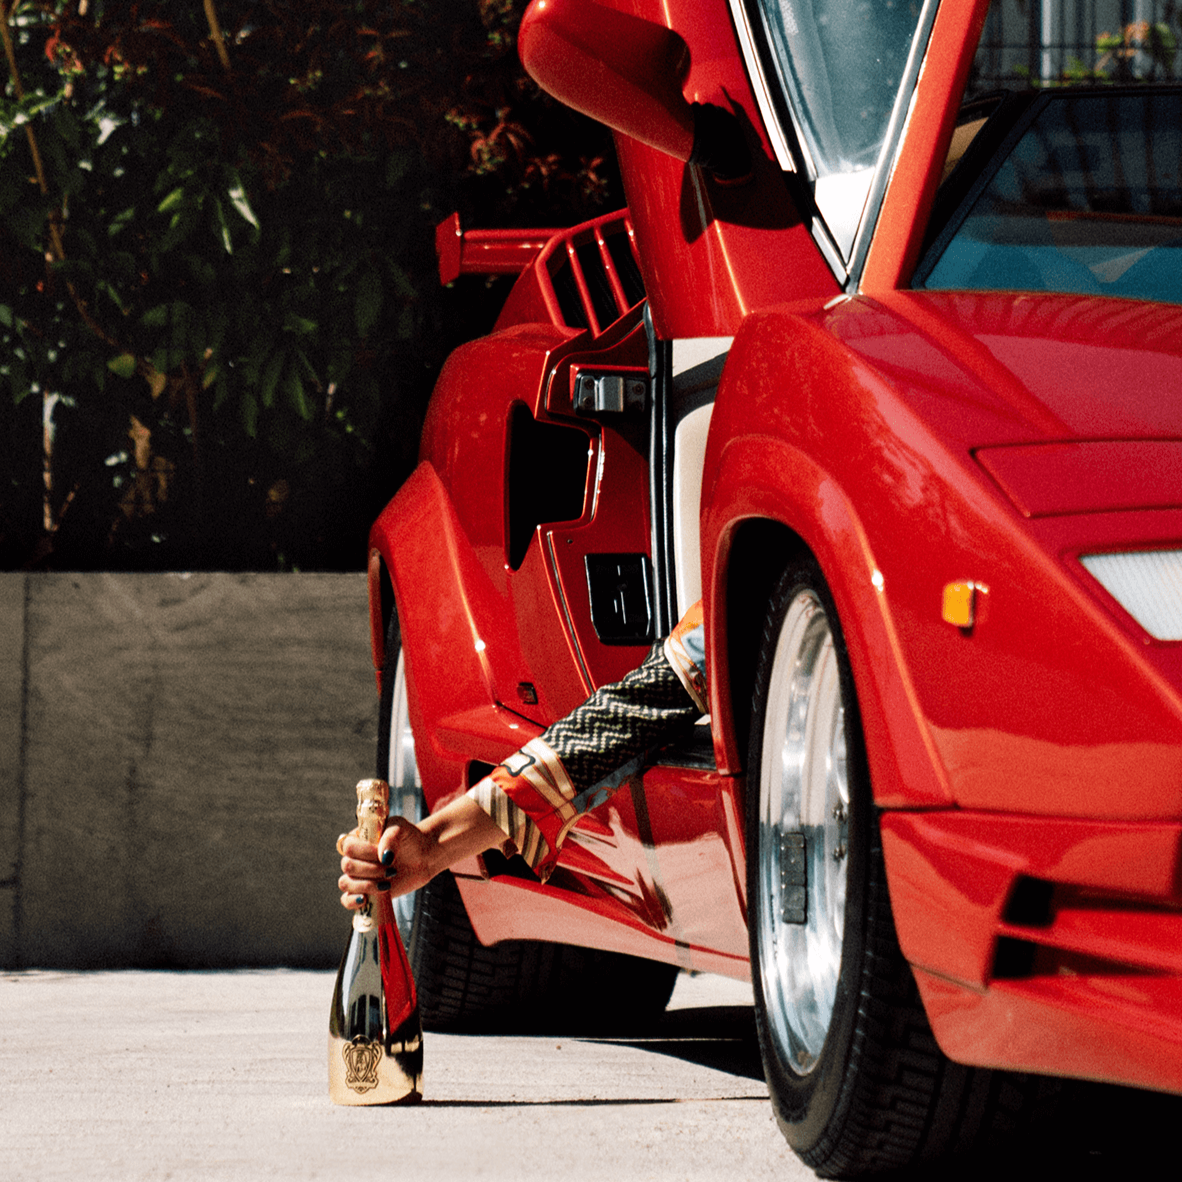 Lamborghini: Oro Vino Spumante with Gift Set